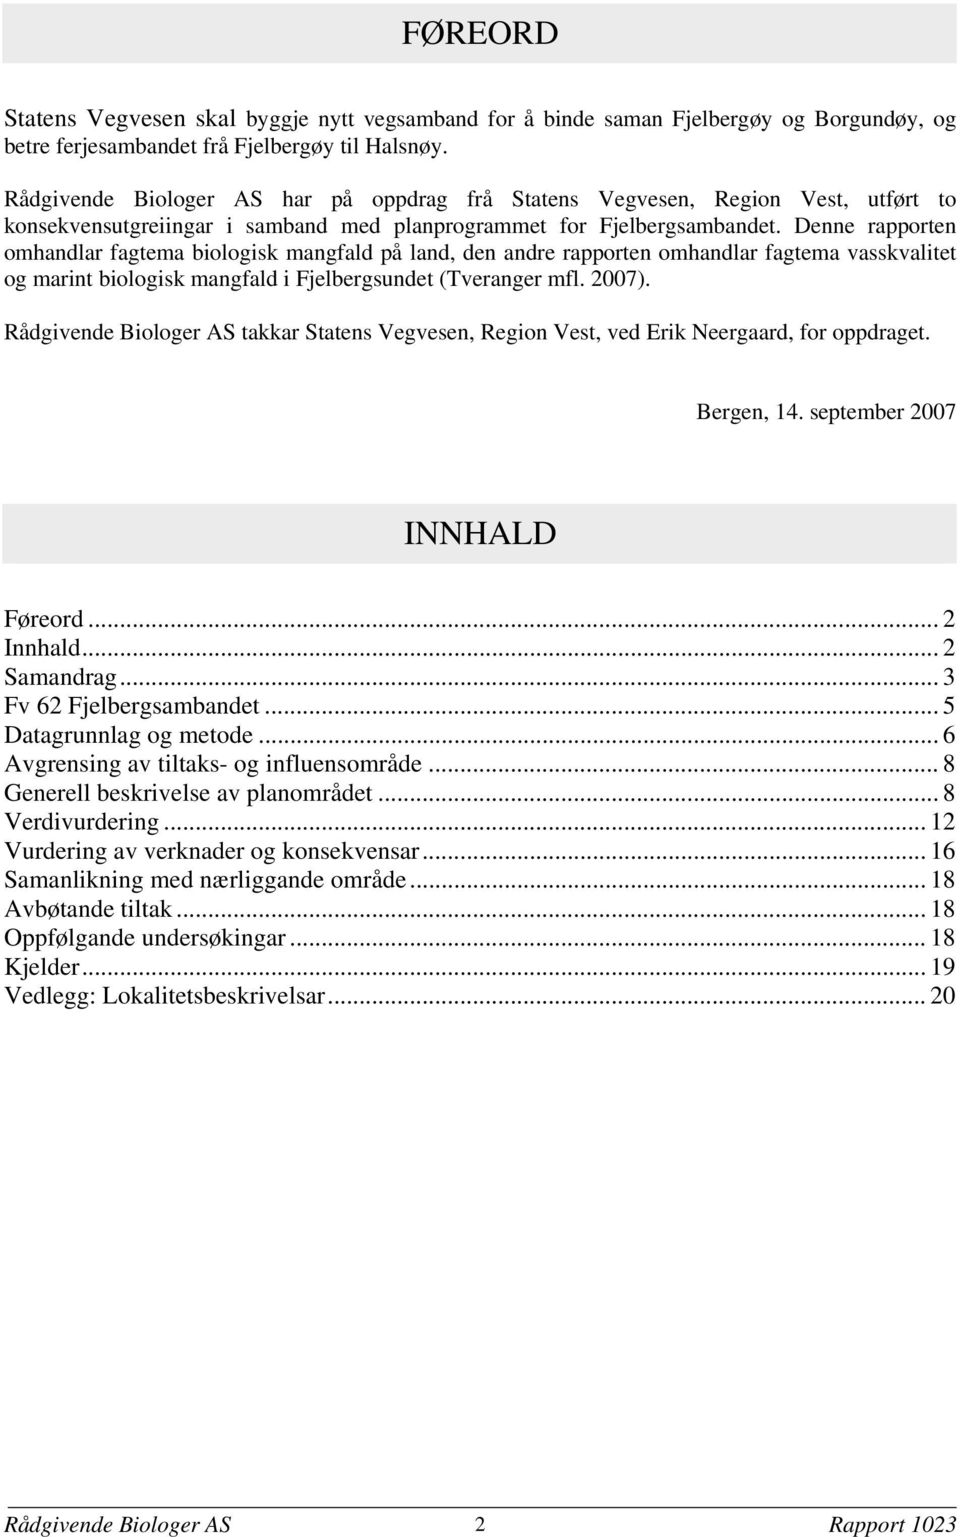 Denne rapporten omhandlar fagtema biologisk mangfald på land, den andre rapporten omhandlar fagtema vasskvalitet og marint biologisk mangfald i Fjelbergsundet (Tveranger mfl. 2007).